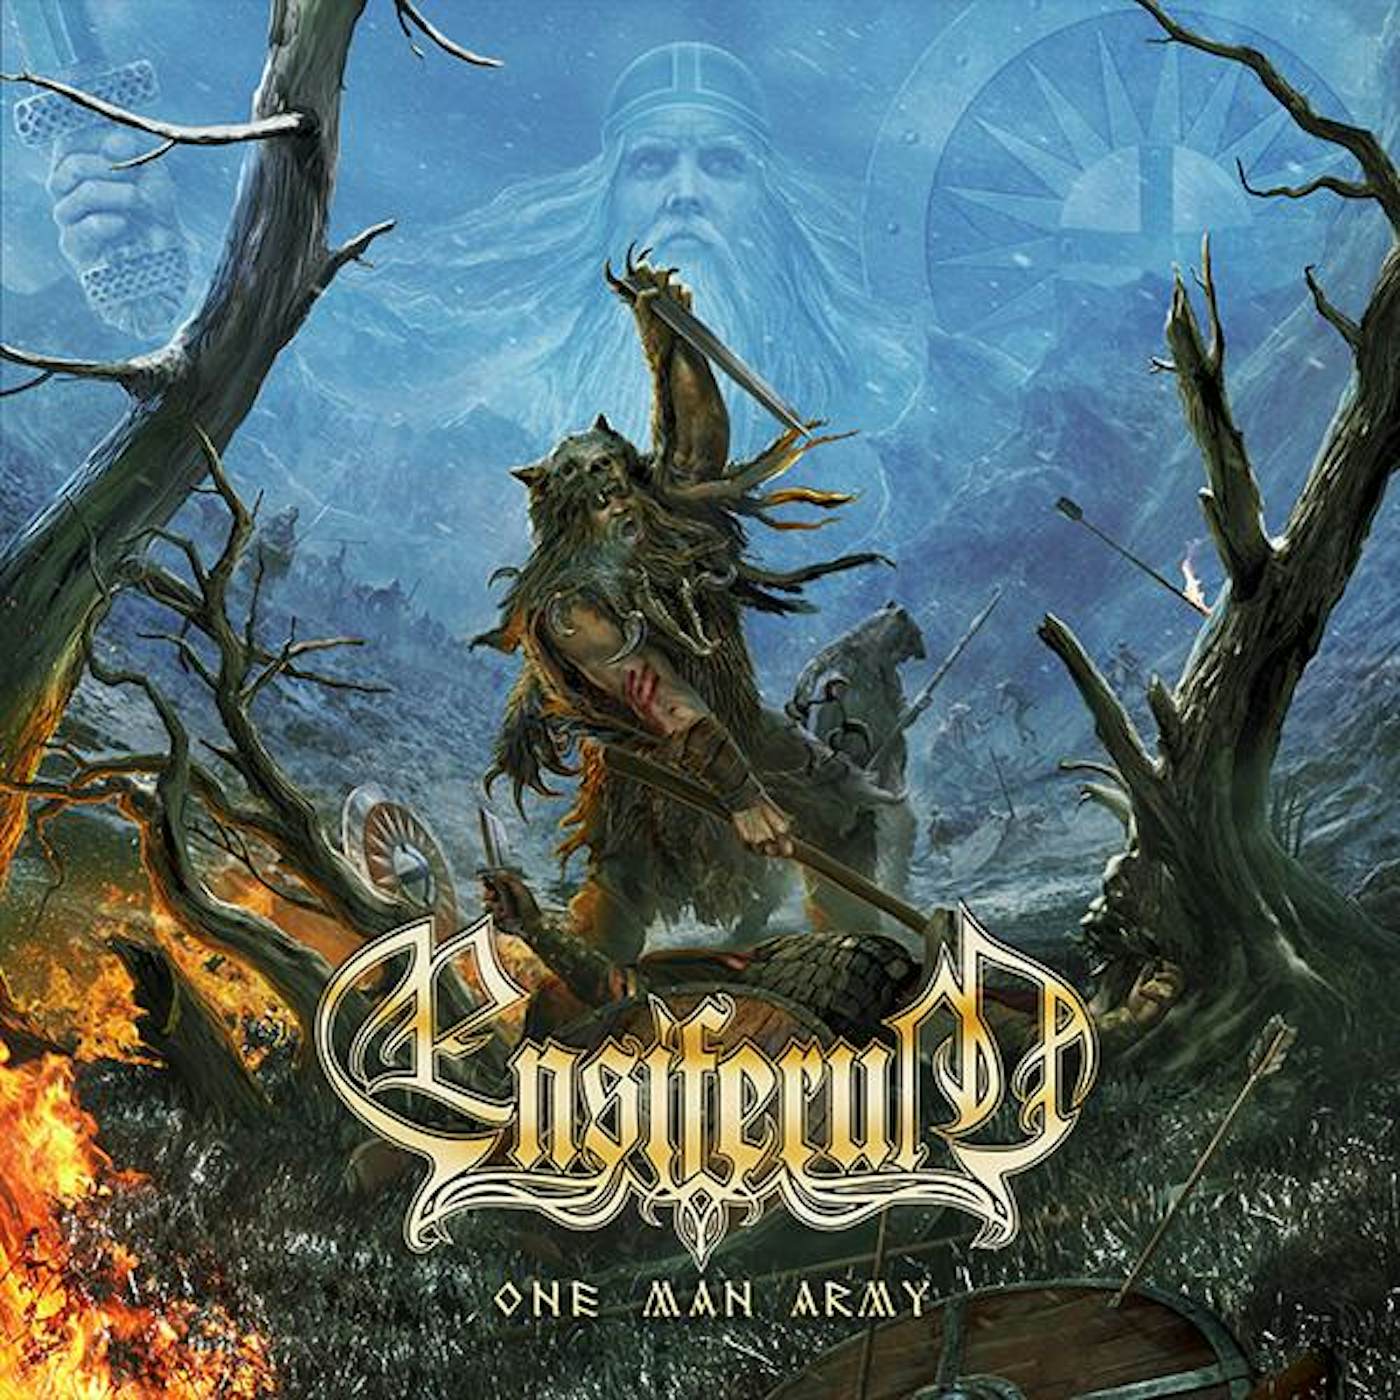 Ensiferum "One Man Army (Black Vinyl)" 2x12"